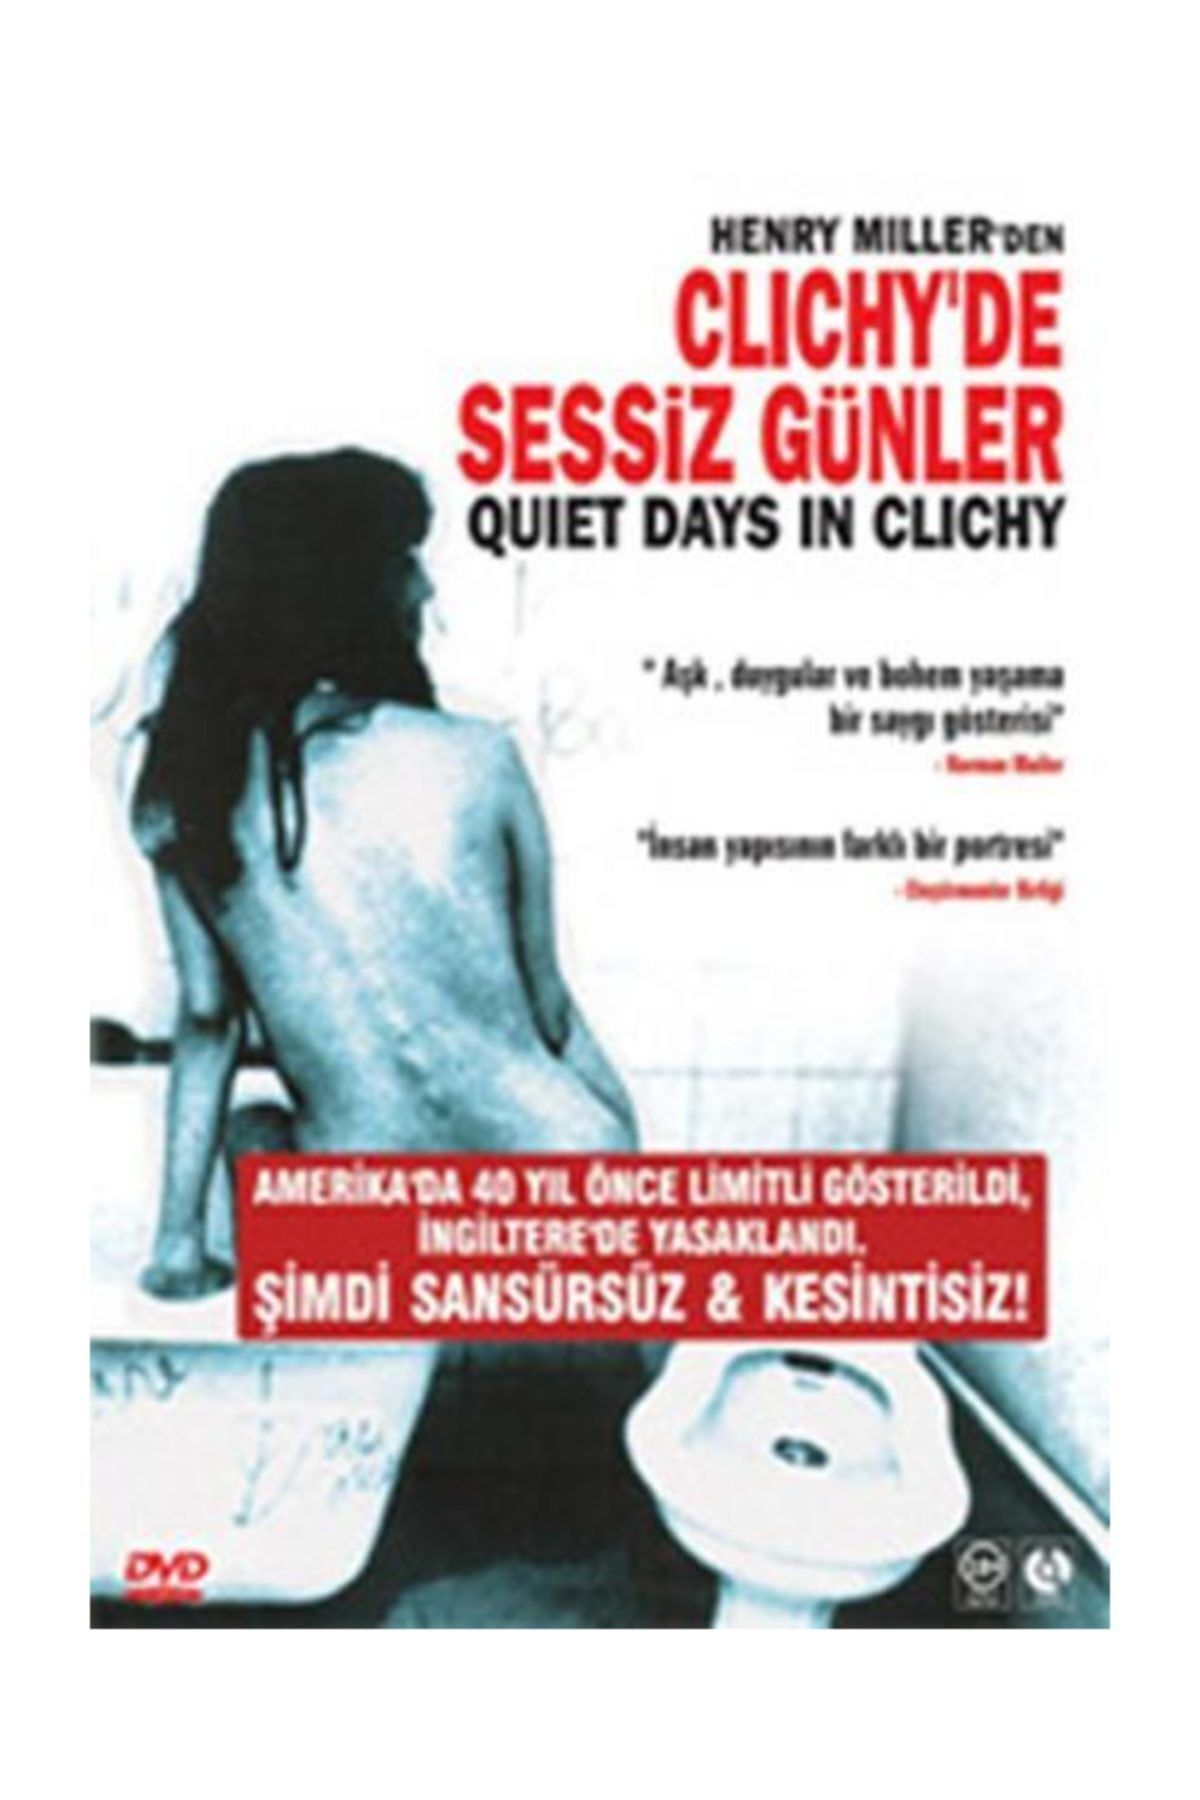 Pal DVD-Clichy'de Sessiz Günler / Quiet Days In Clichy